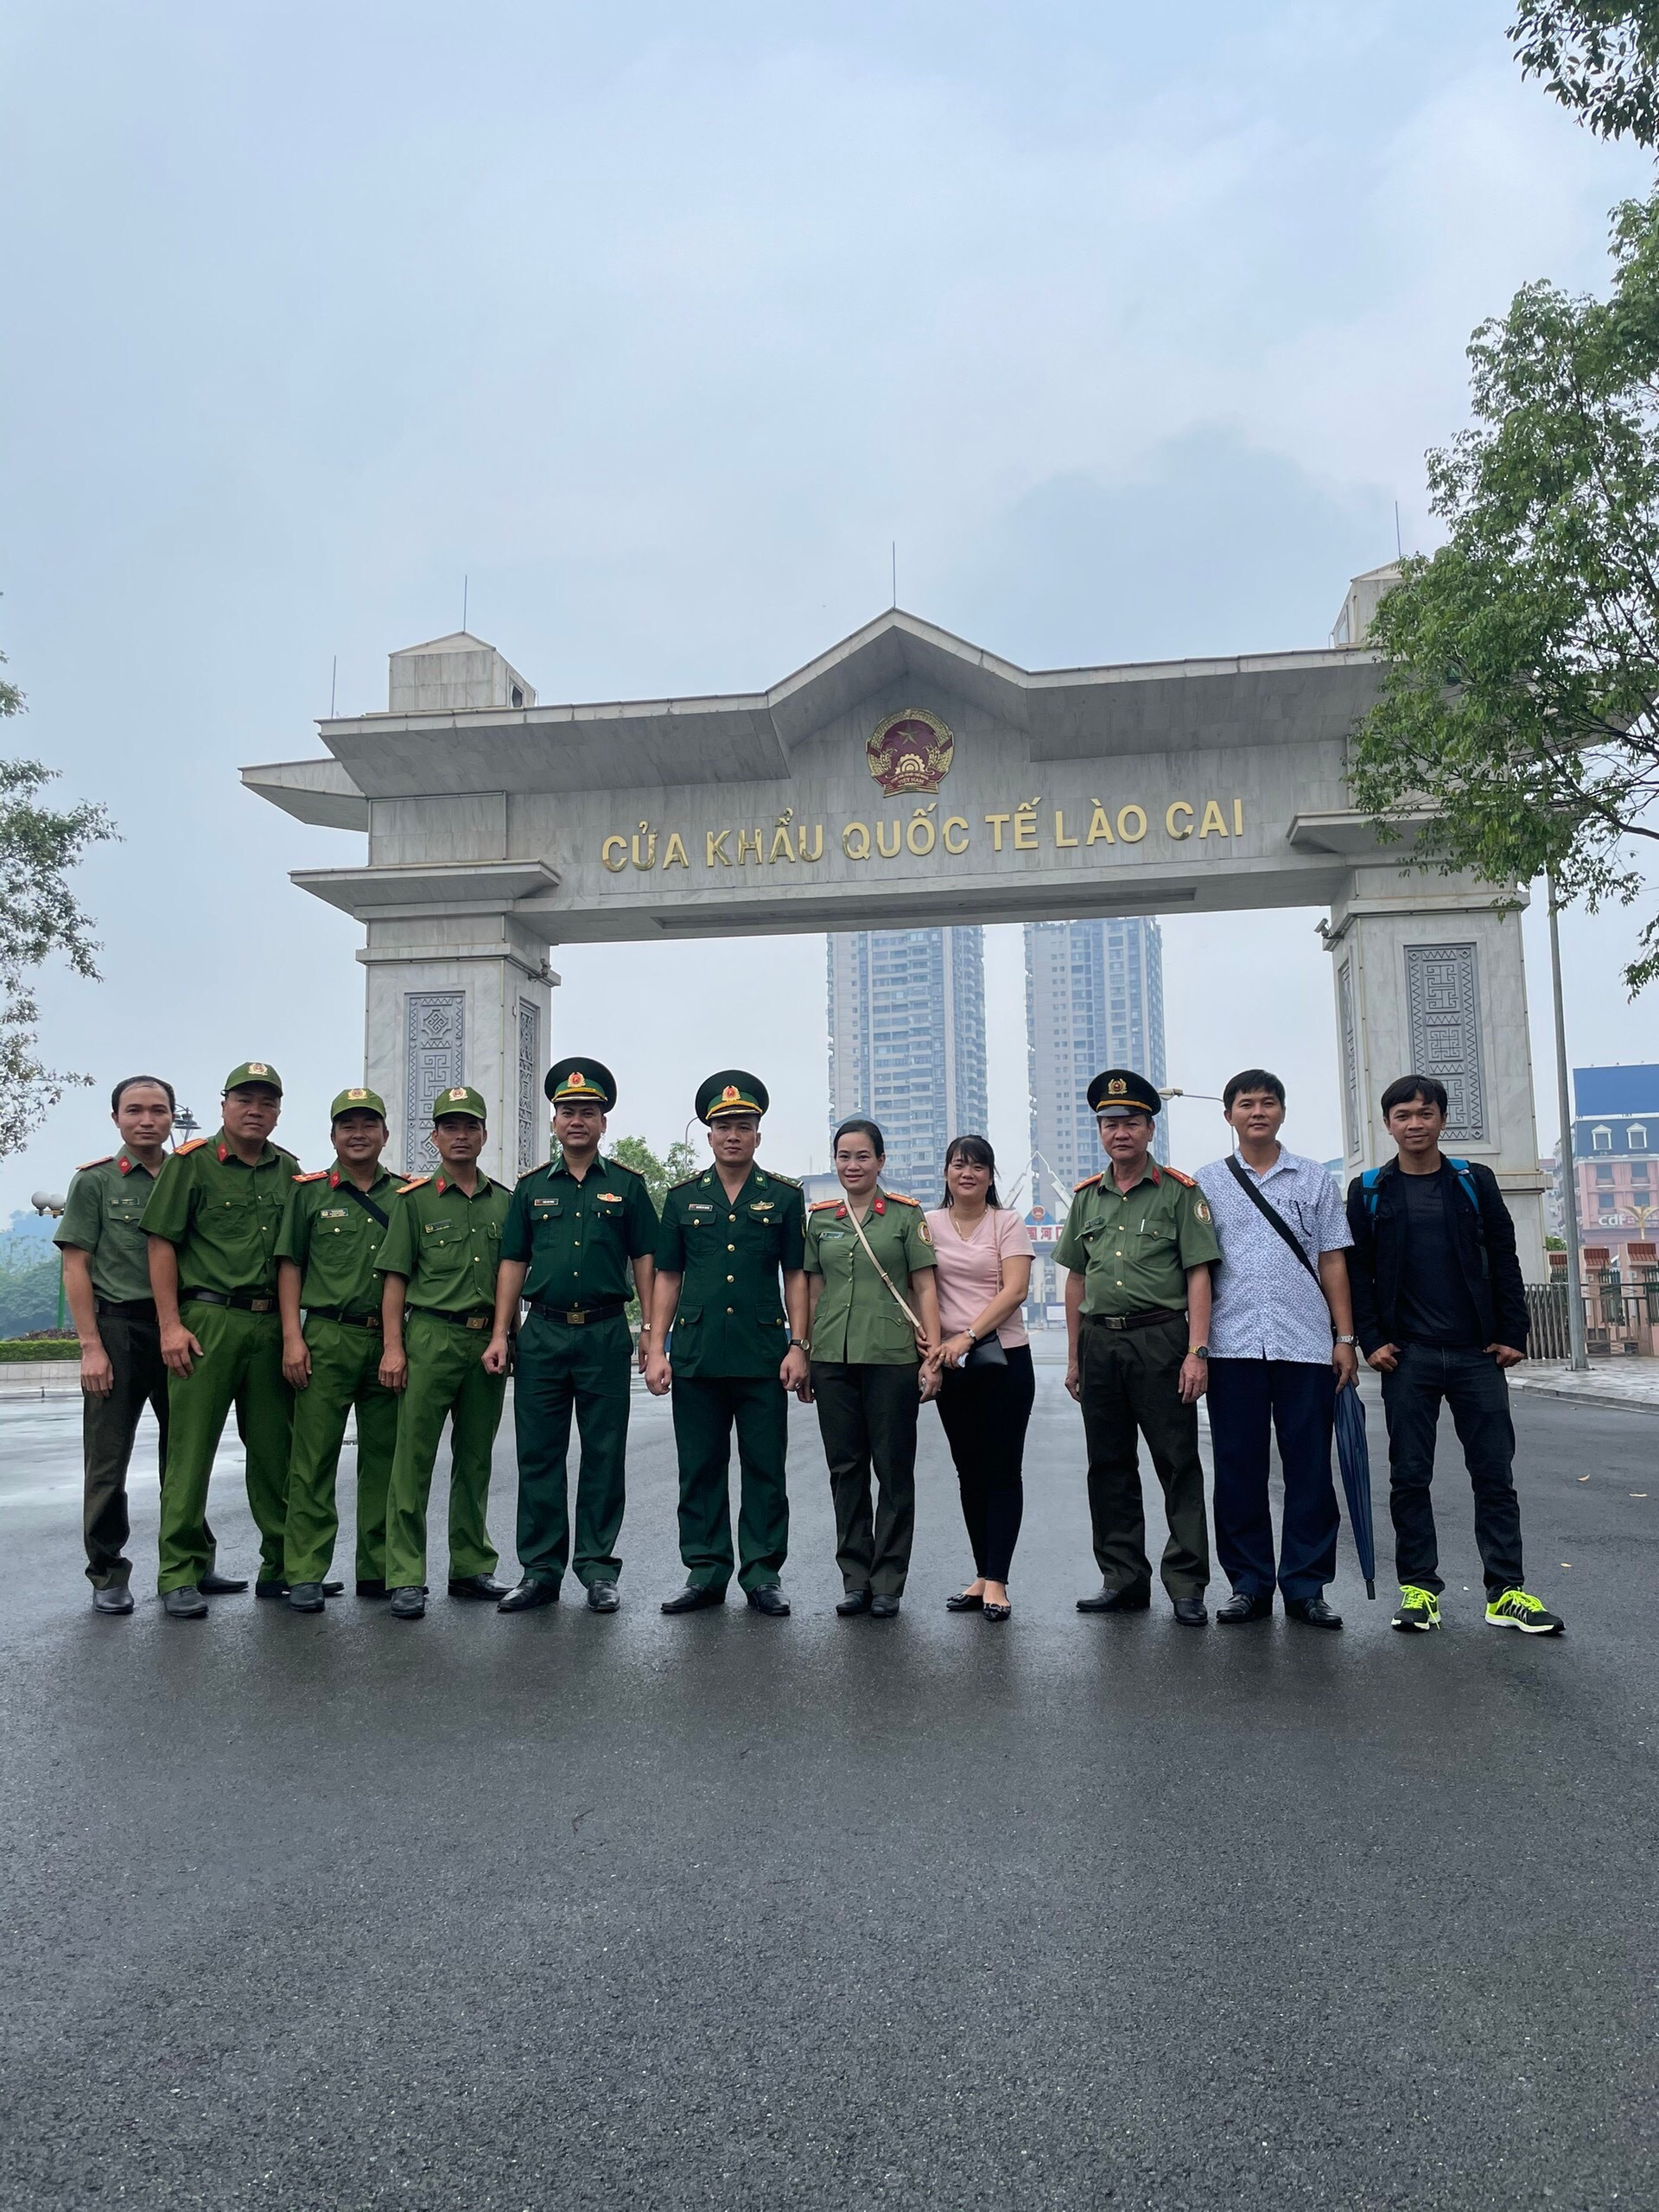 Tây Ninh trao trả 16 công dân Trung Quốc qua cửa khẩu Quốc tế Lào Cai